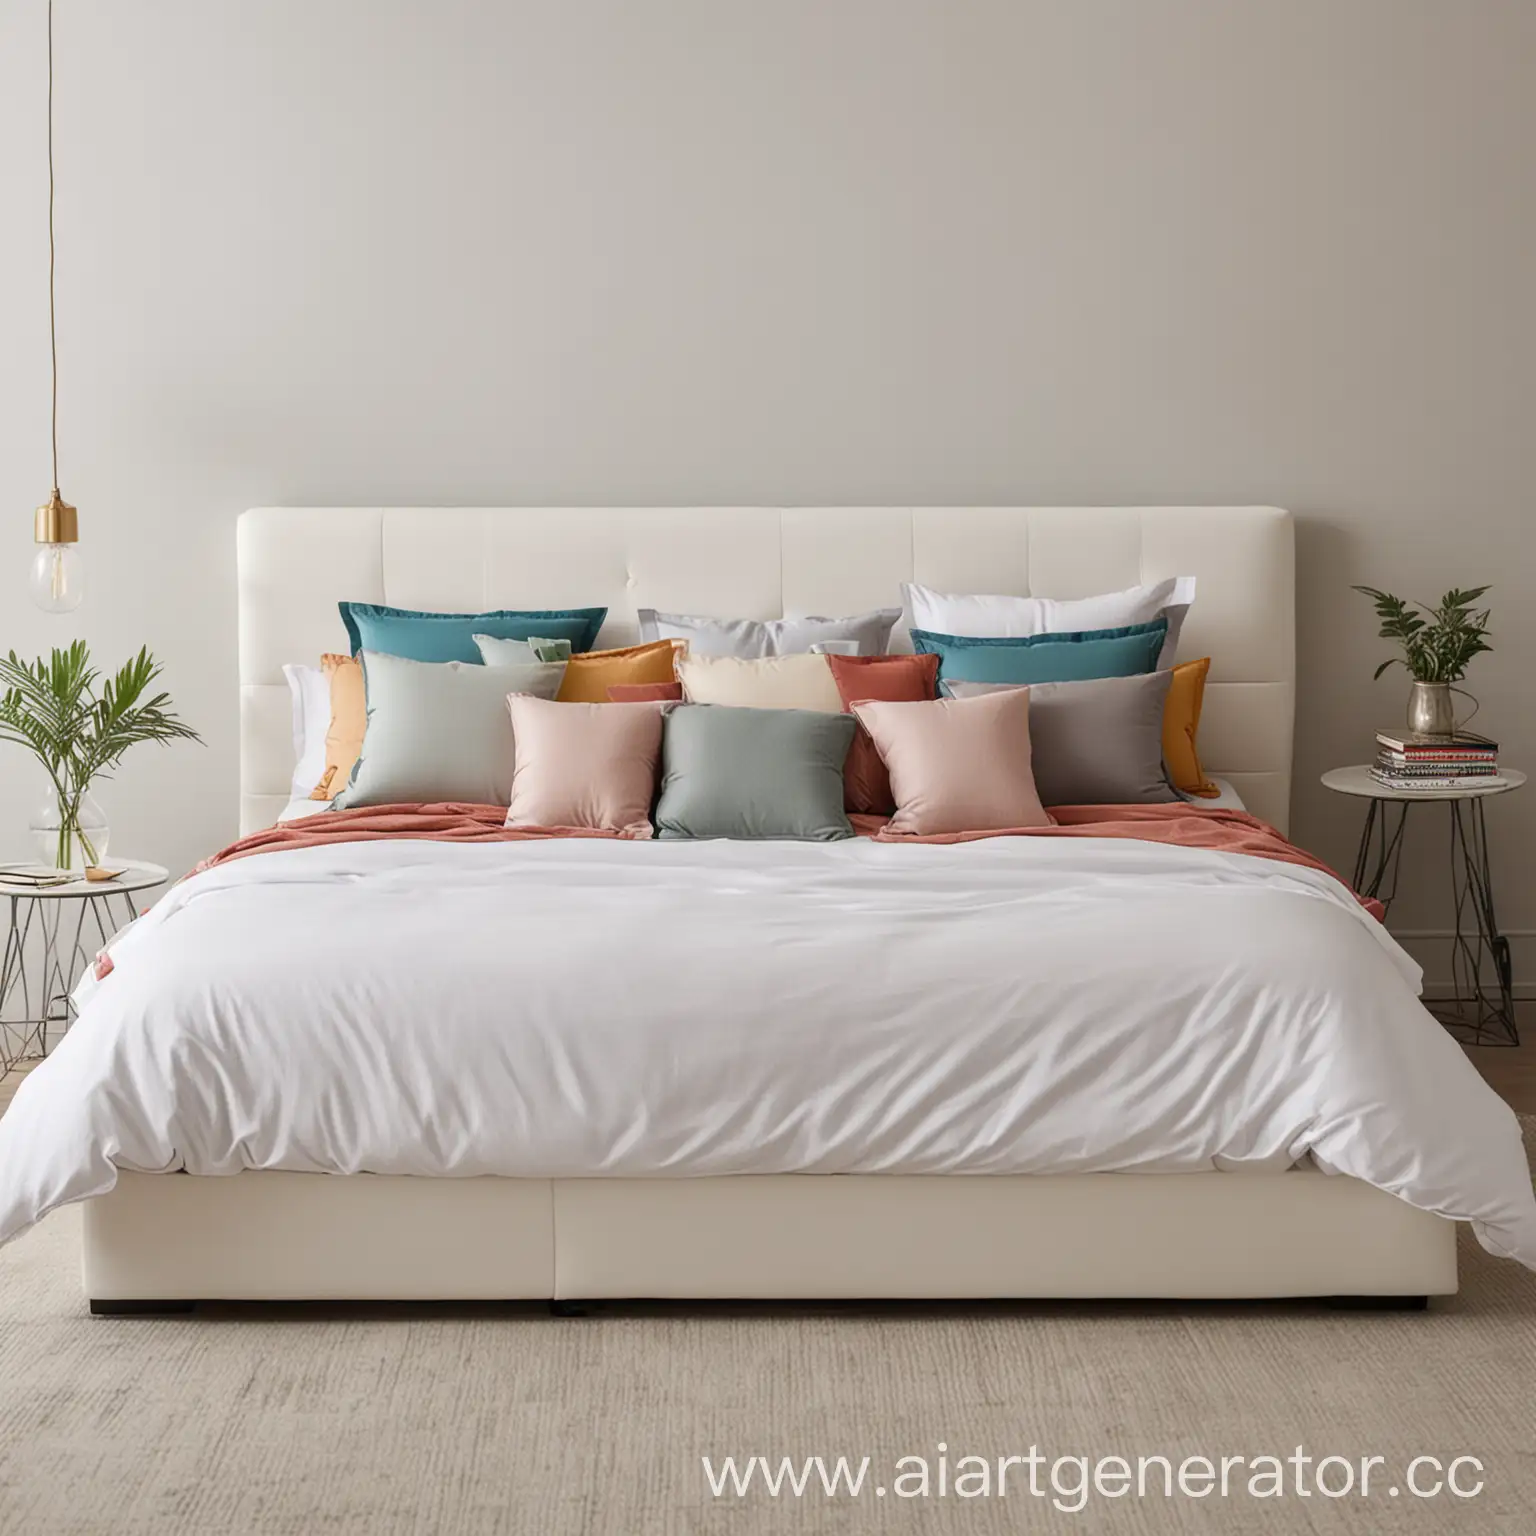 кровать белого цвета с 4 разноцветными подушками  стоящая в комнате
